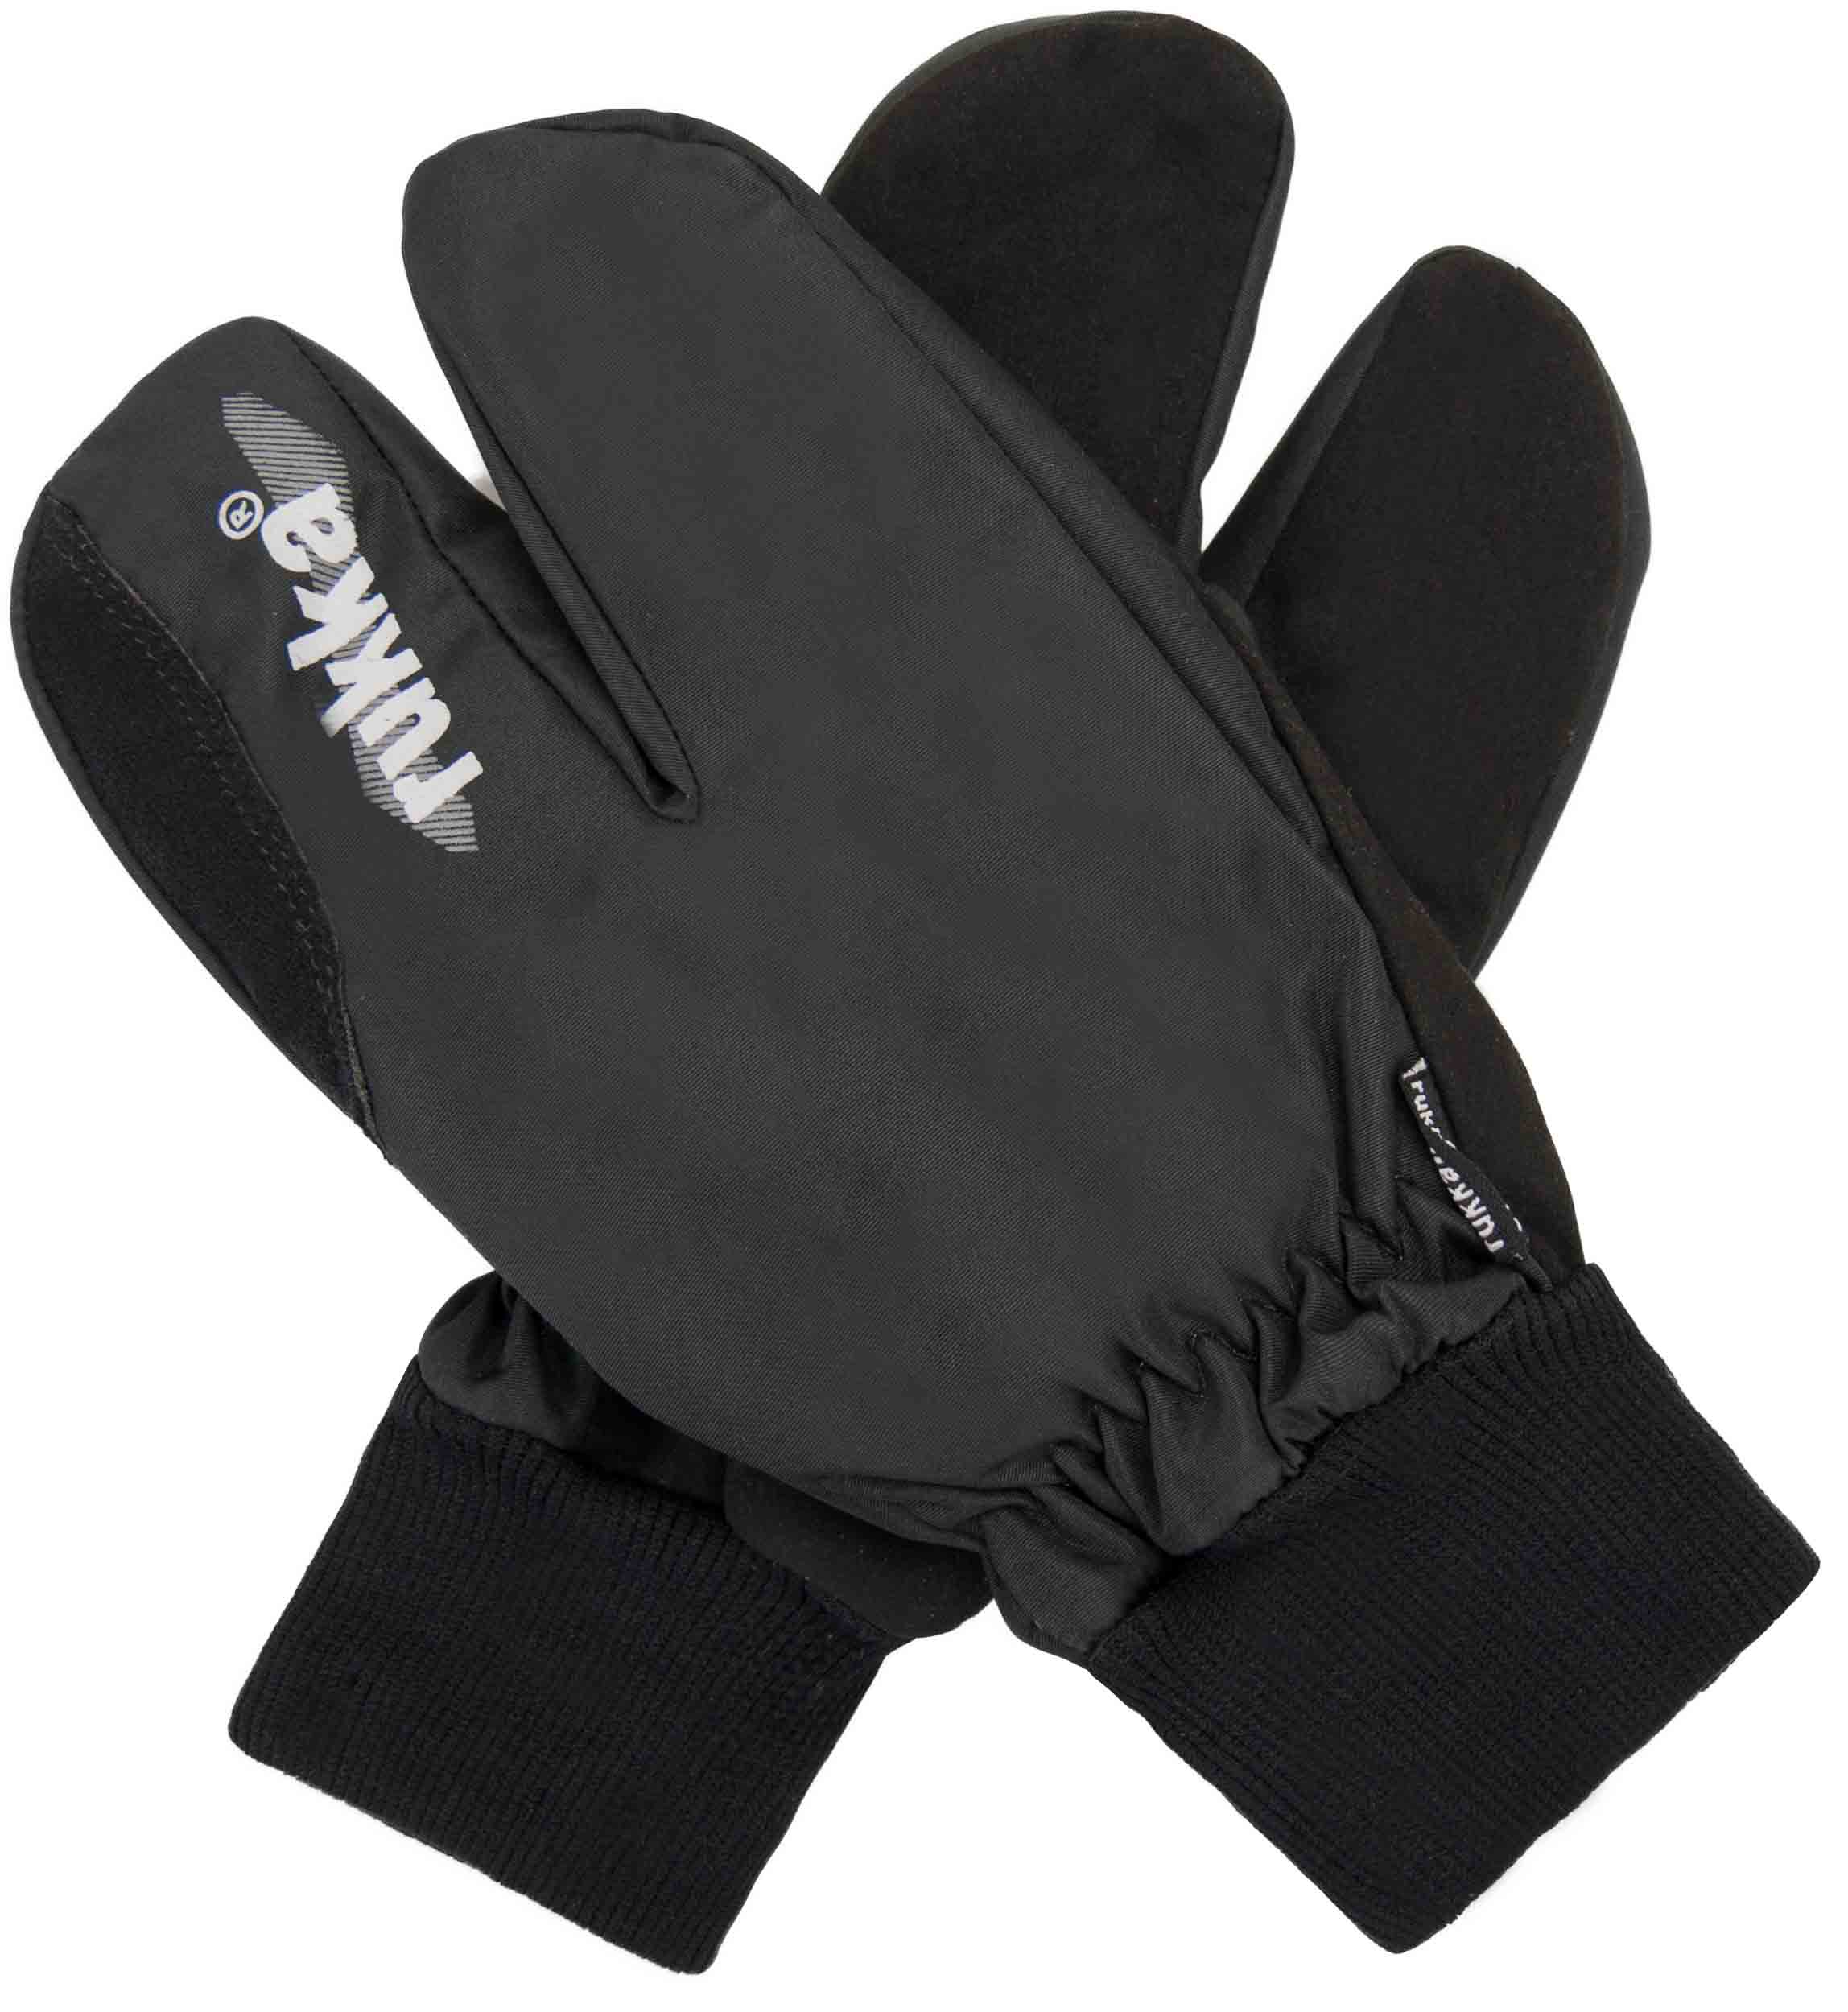 Rukavice Rukka Split Finger Gloves|9